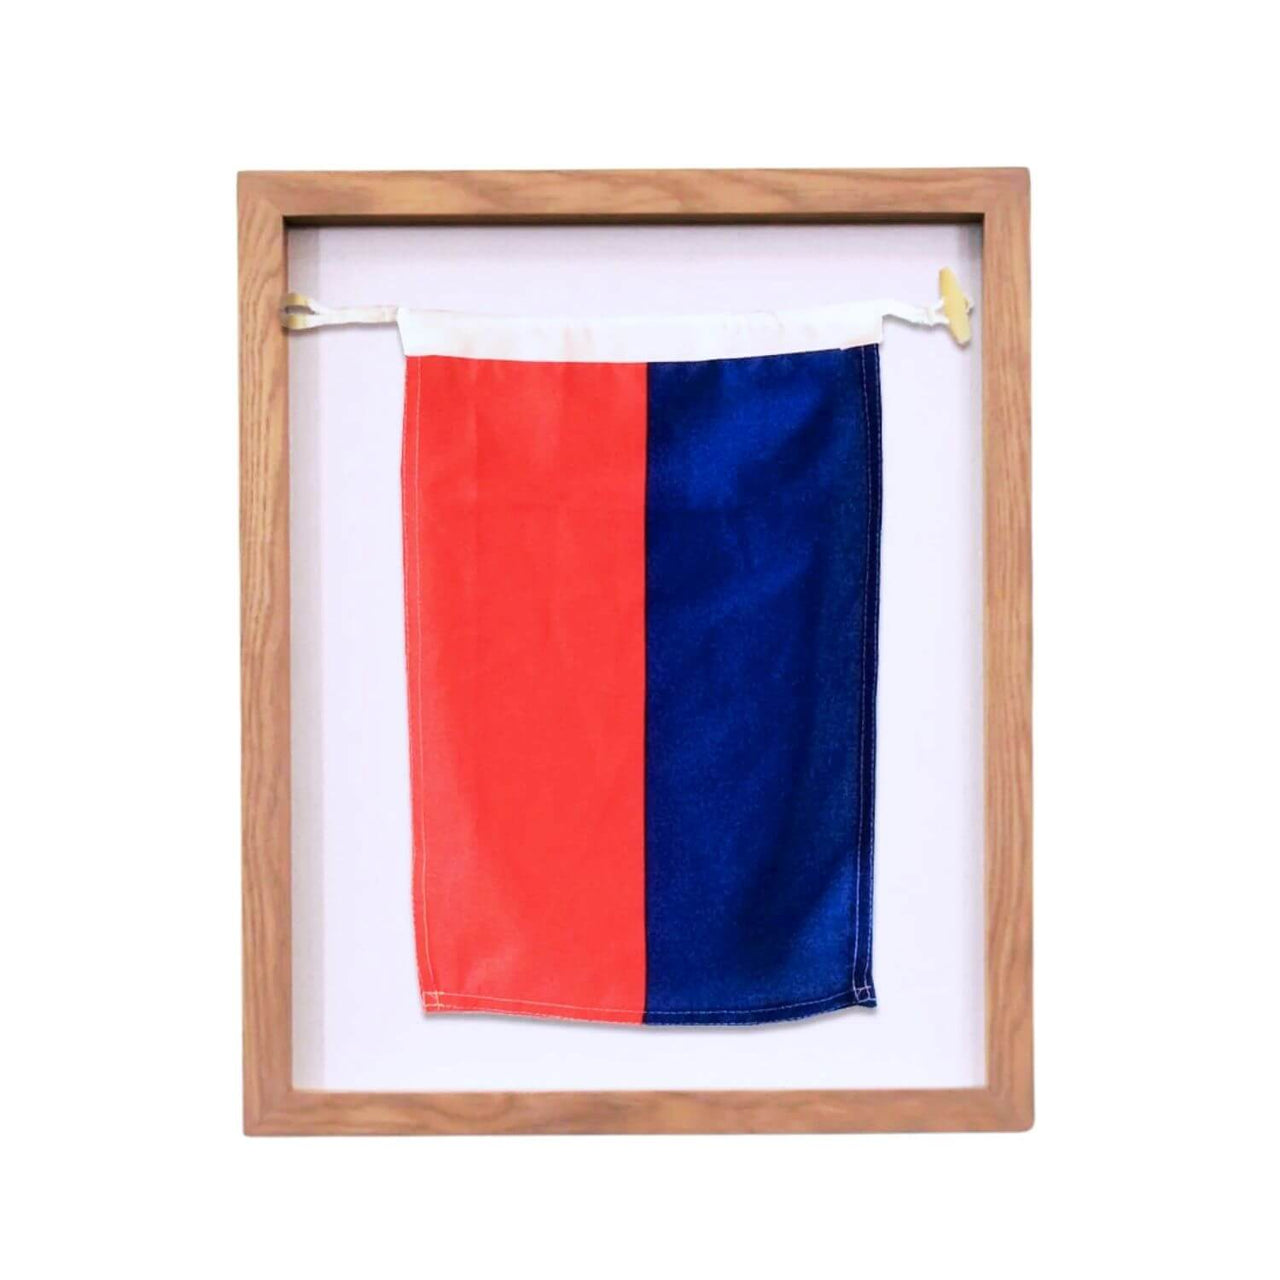 Framed Nautical Flags, A-Z New England Trading Co Decor E